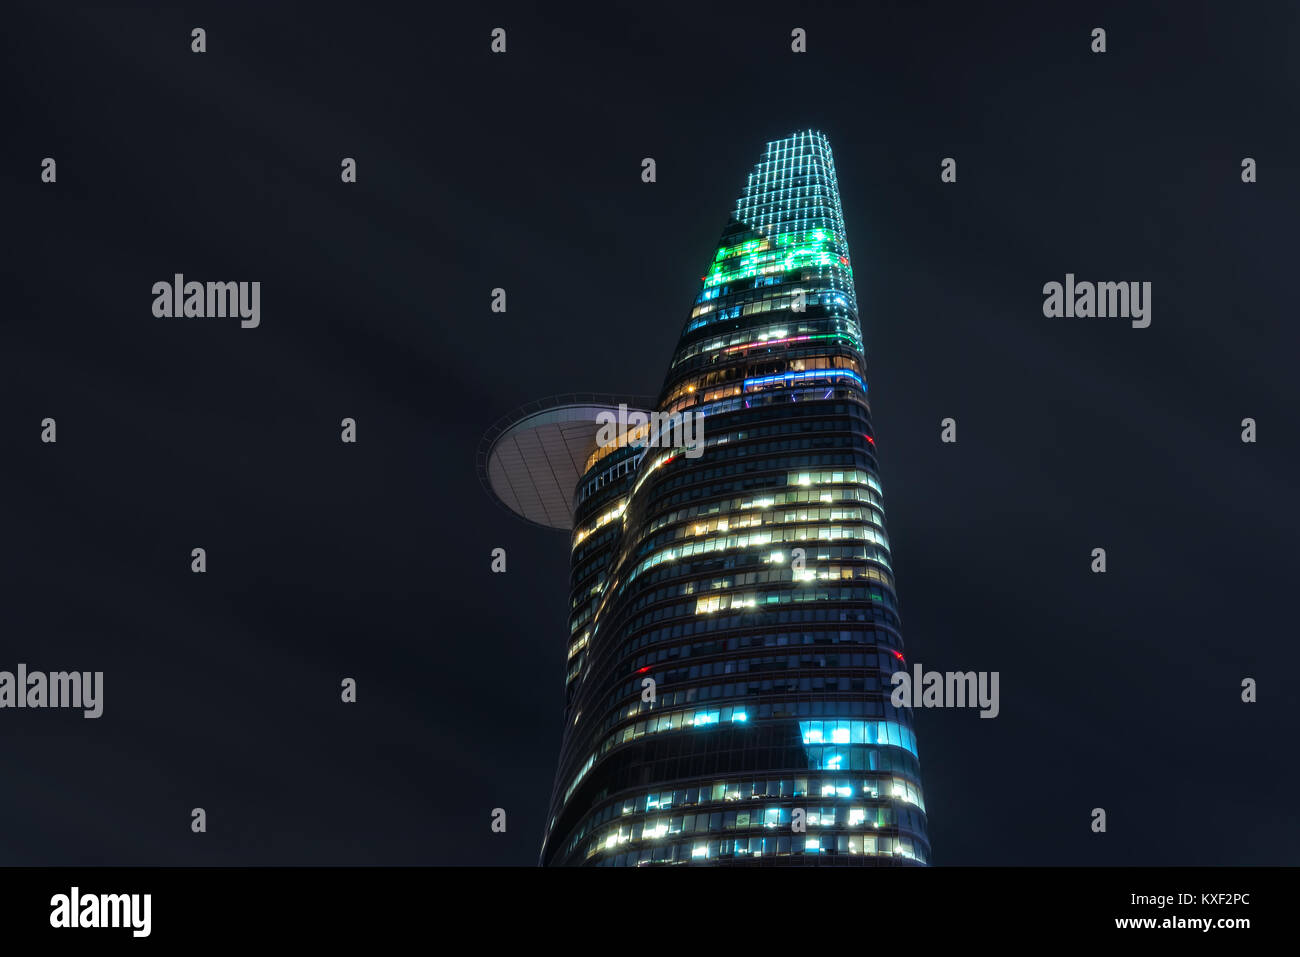 Architektur Bitexco Tower bei Nacht mit 262,5 m 68-stöckiges Hochhaus in 2011 ist das höchste Gebäude in Betracht gezogen Stockfoto